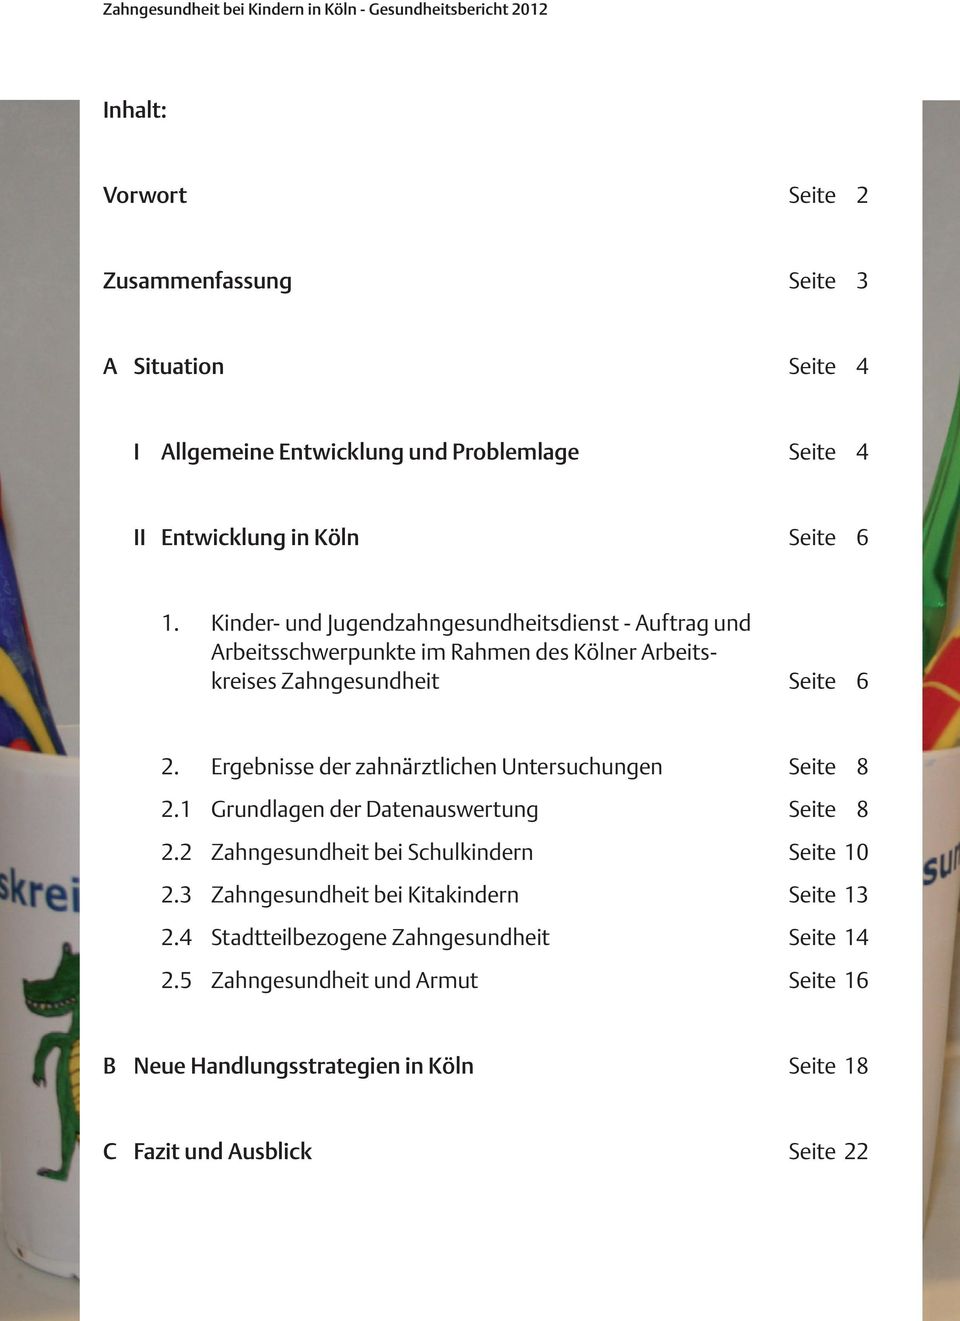 Kinder- und Jugendzahngesundheitsdienst - Auftrag und Arbeitsschwerpunkte im Rahmen des Kölner Arbeitskreises Zahngesundheit Seite 6 2.